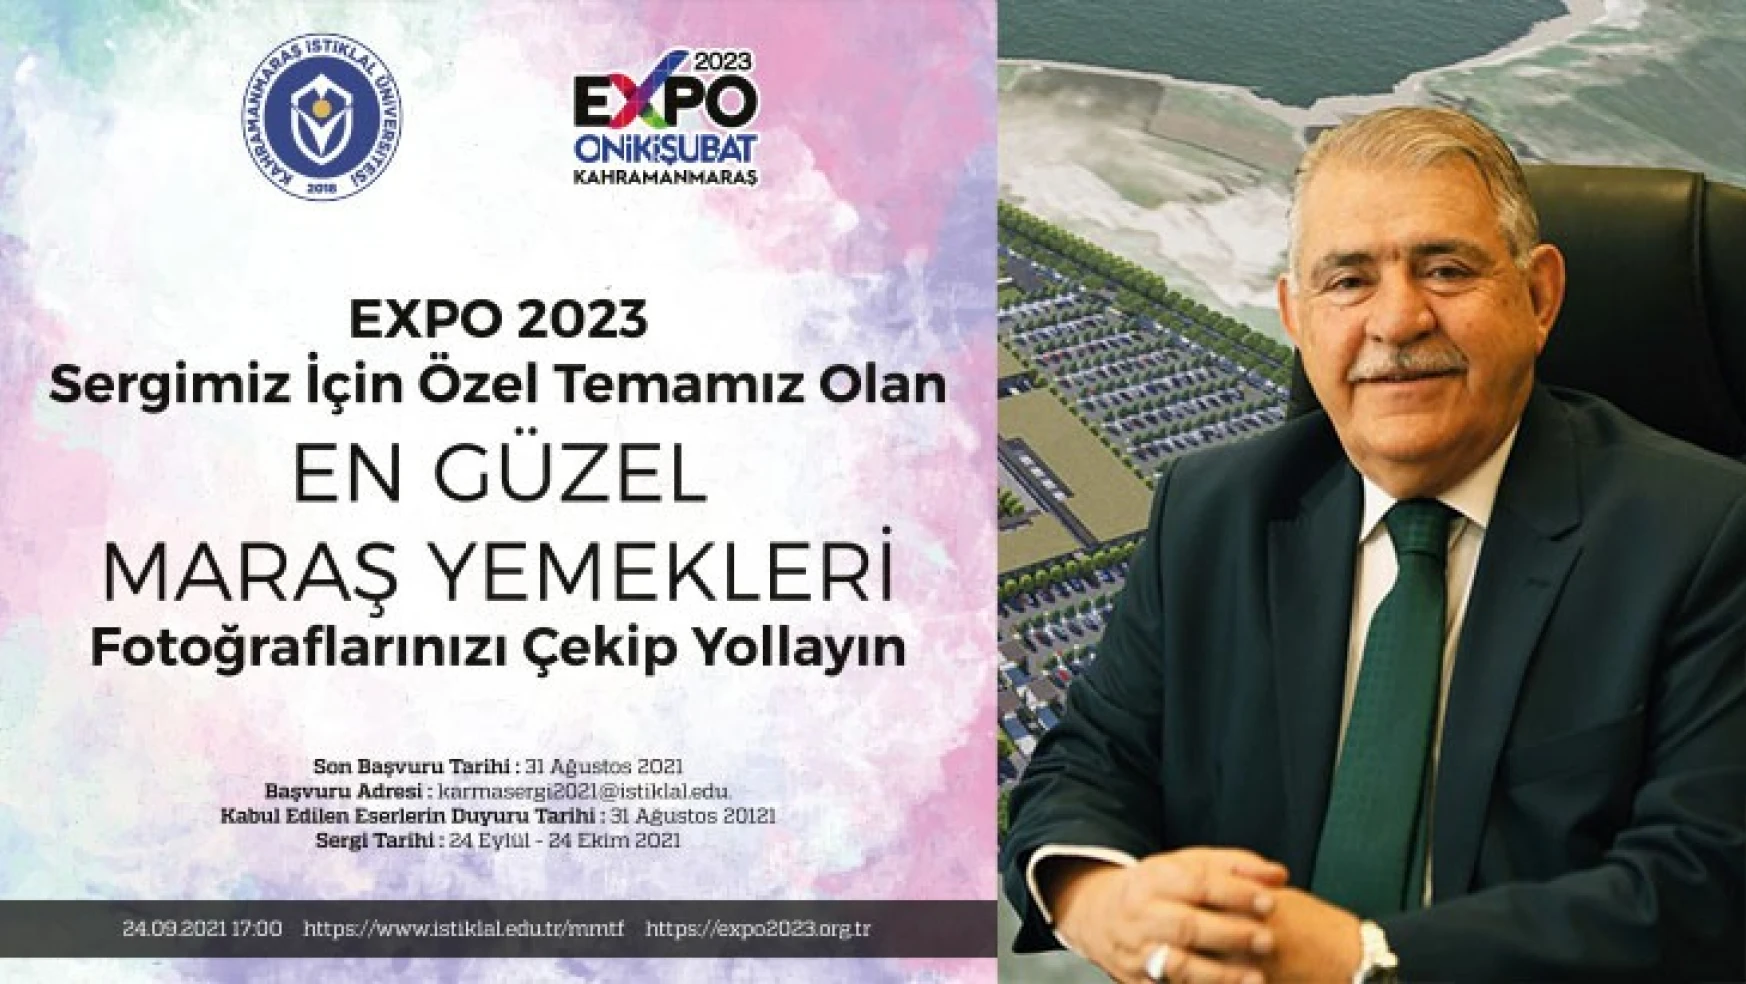 Onikişubat Belediyesi, EXPO 2023 projesi kapsamında KİÜ ile Çevrim İçi Karma Sergi açacak